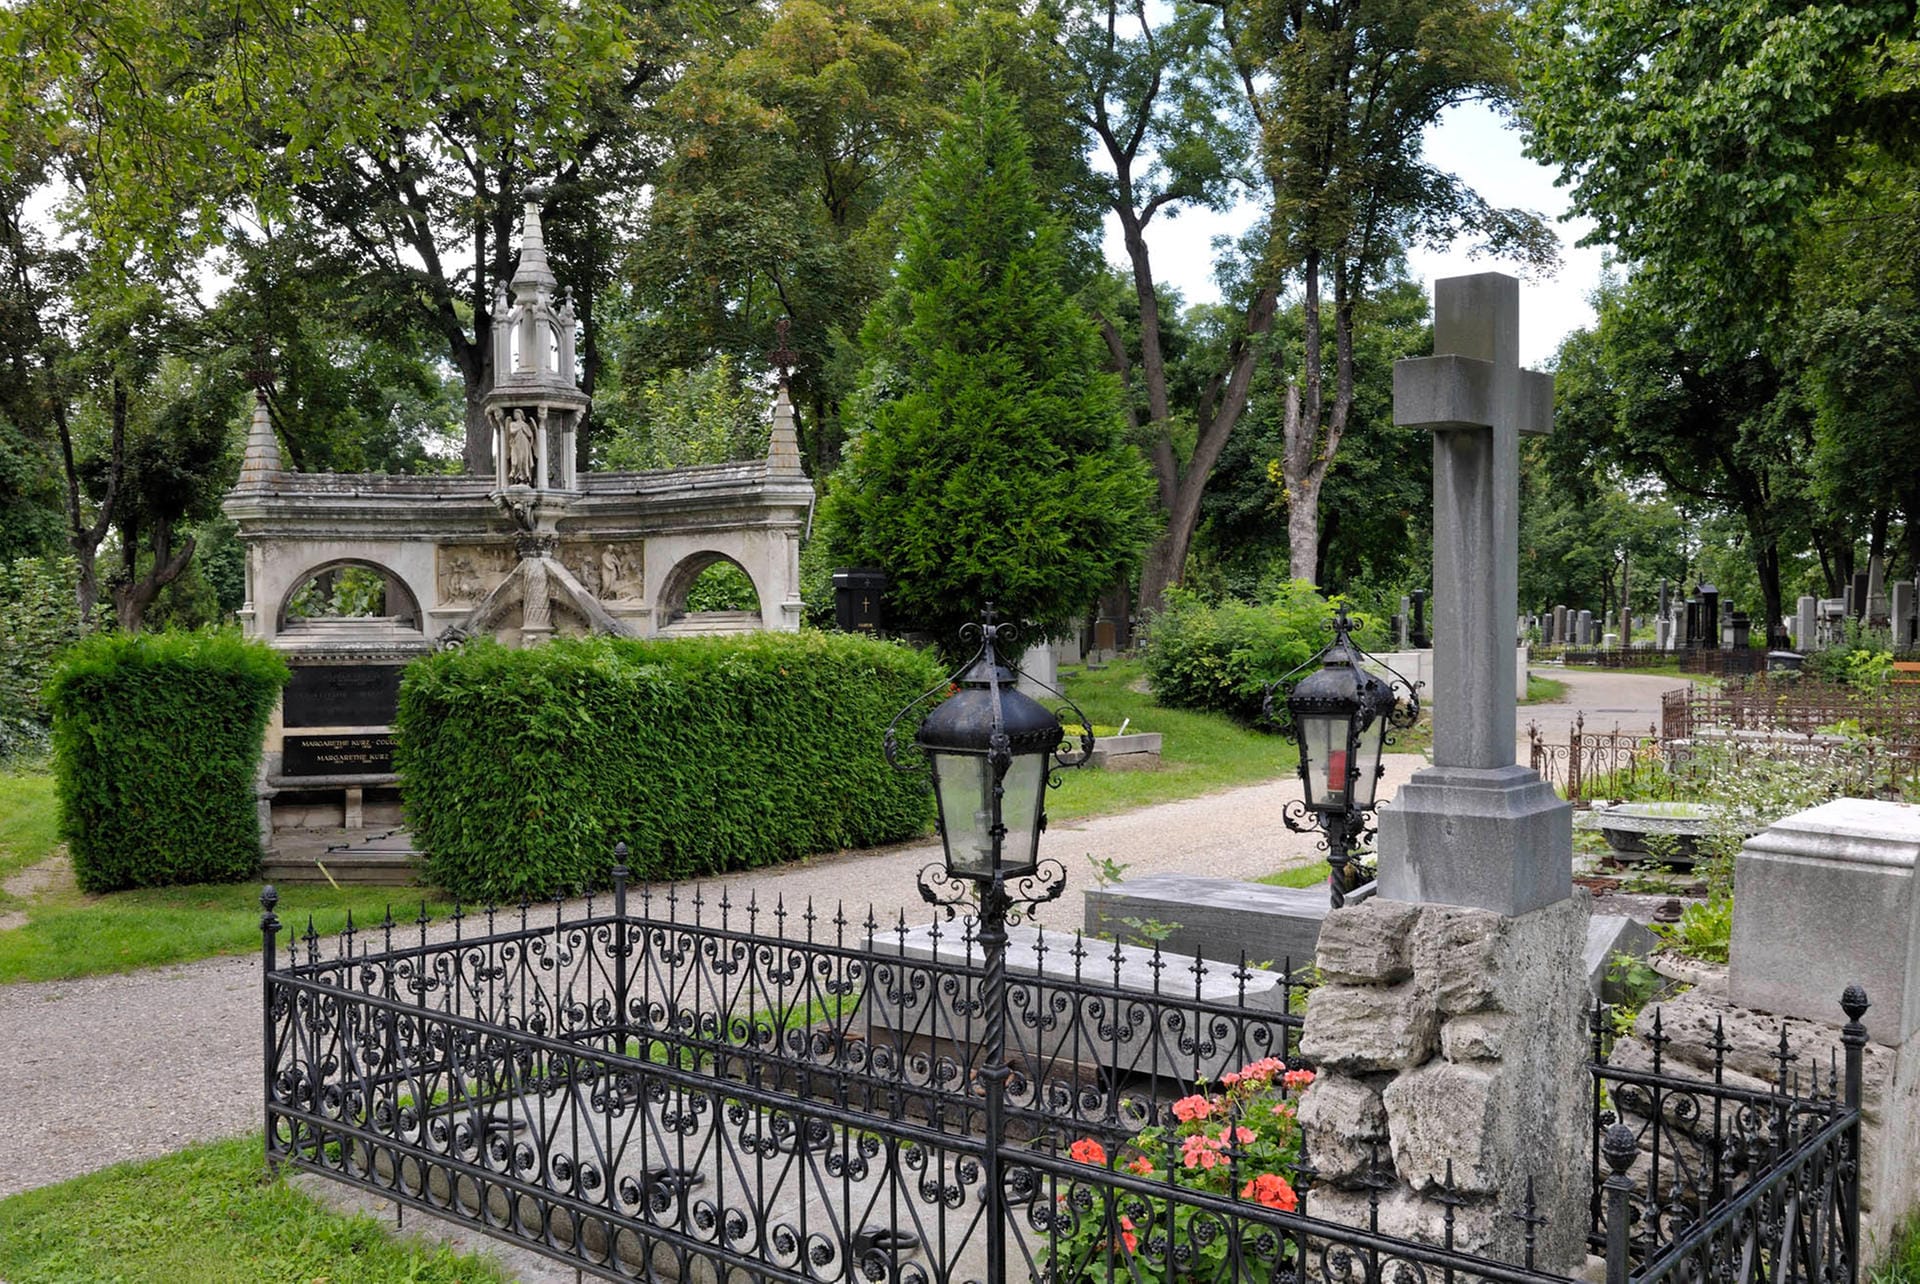 Pompös sind viele Gräber auf dem Zentralfriedhof in Wien. Der Ort ist eine berühmte Touristenattraktion.